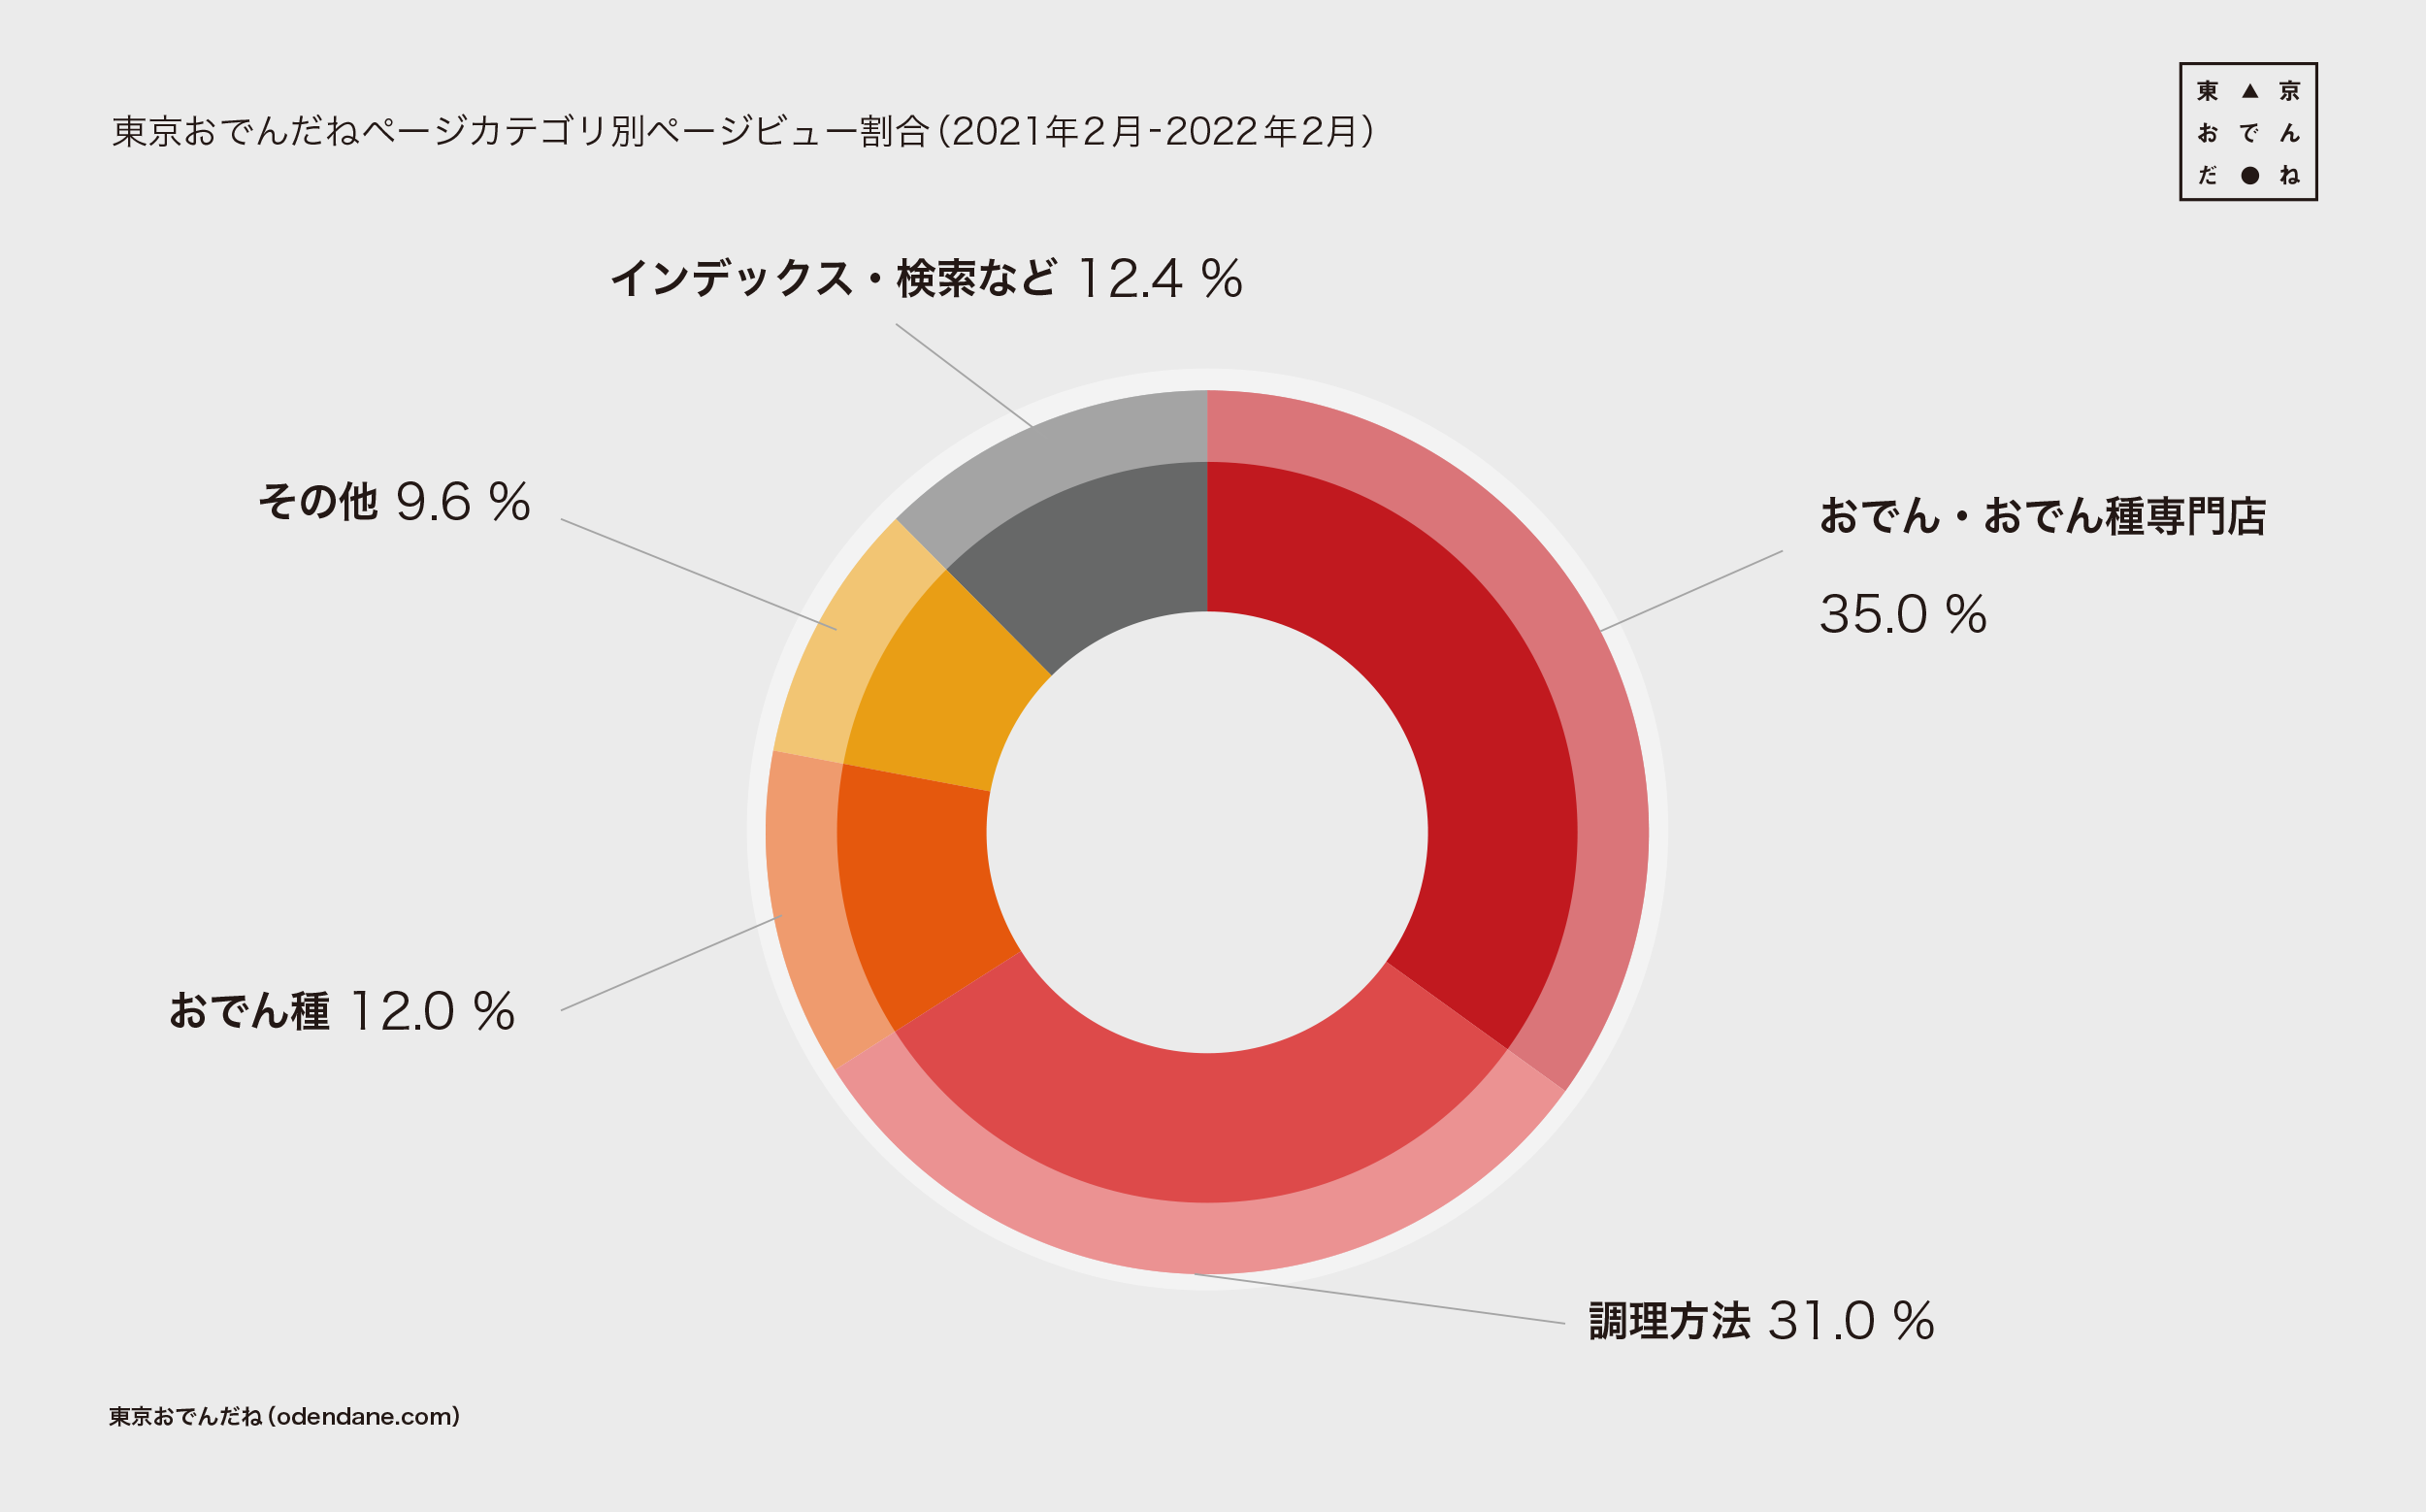 東京おでんだねページカテゴリ別ページビュー割合（2021年2月-2022年2月）